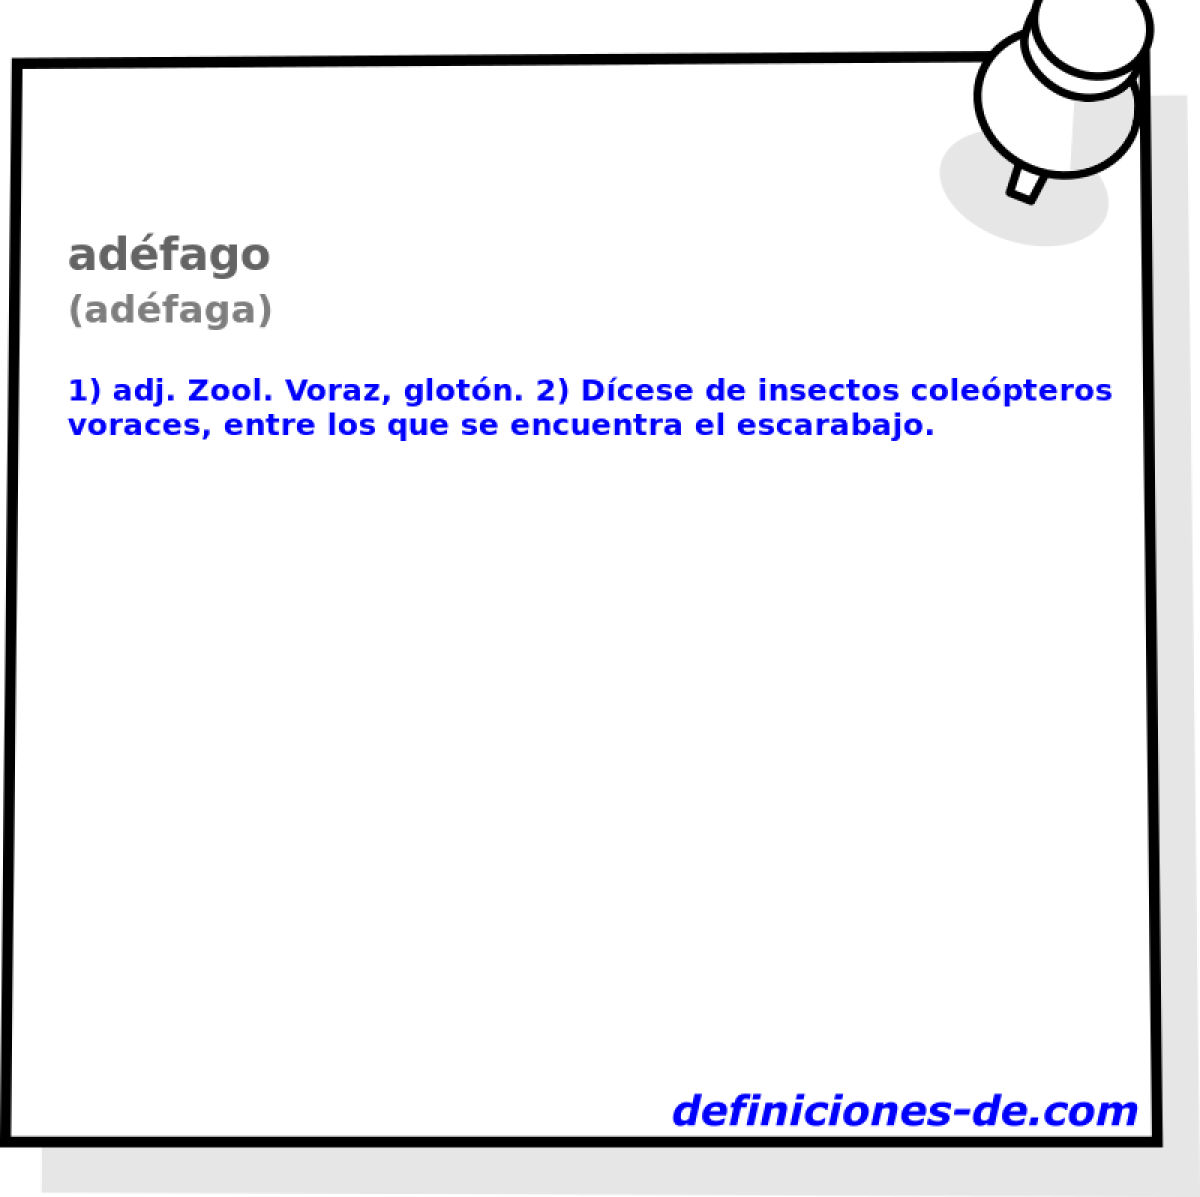 adfago (adfaga)